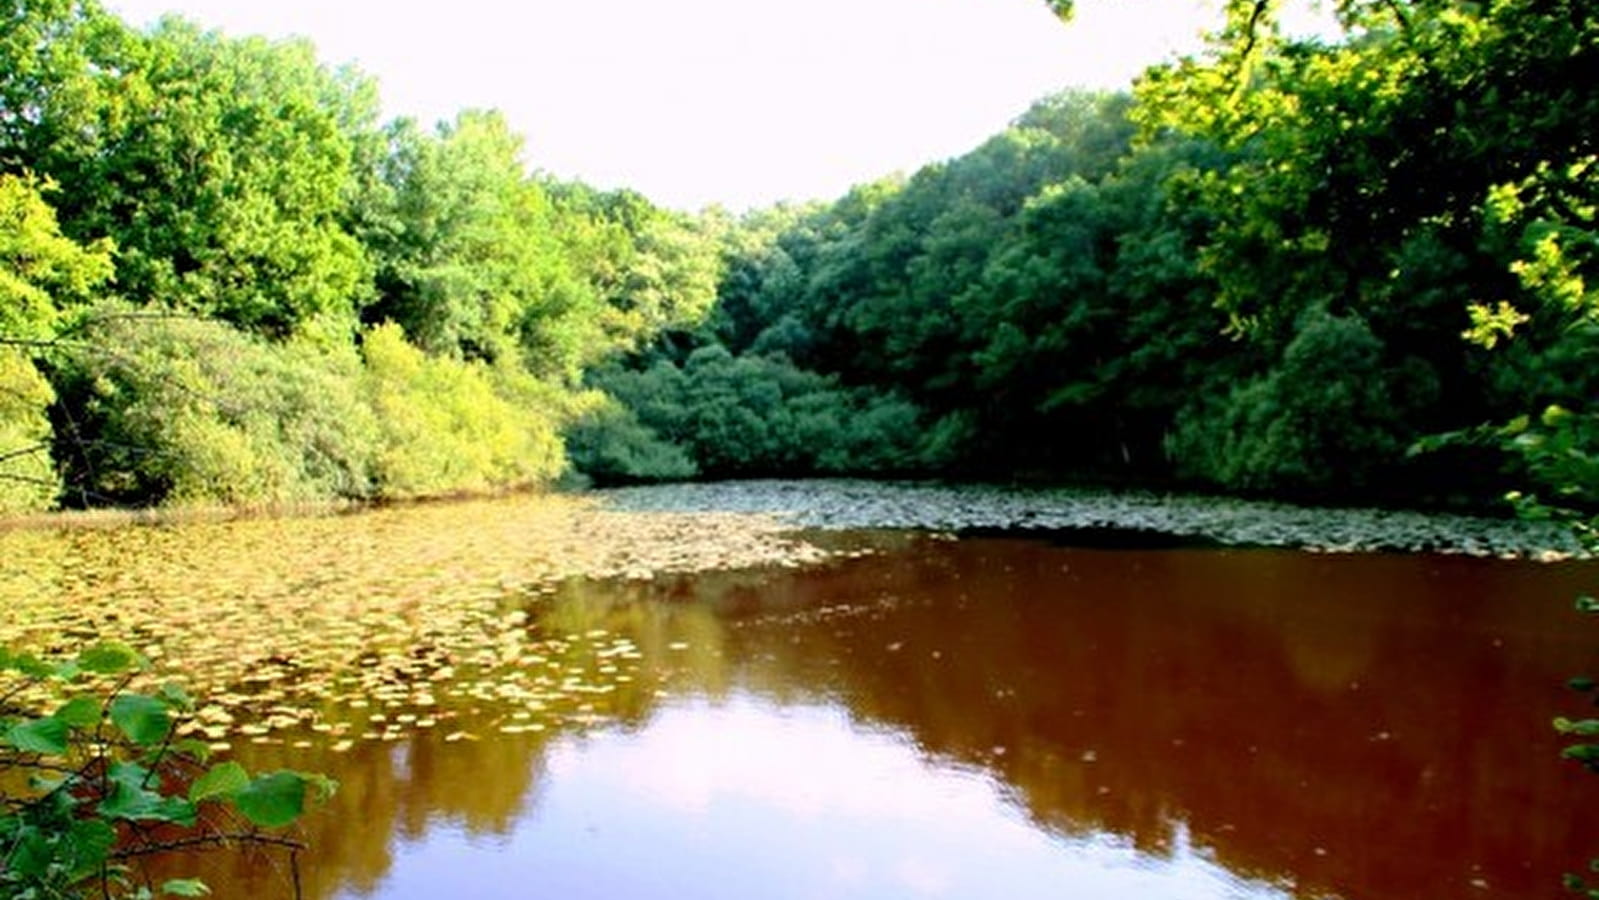 Der Teich von Moutiers